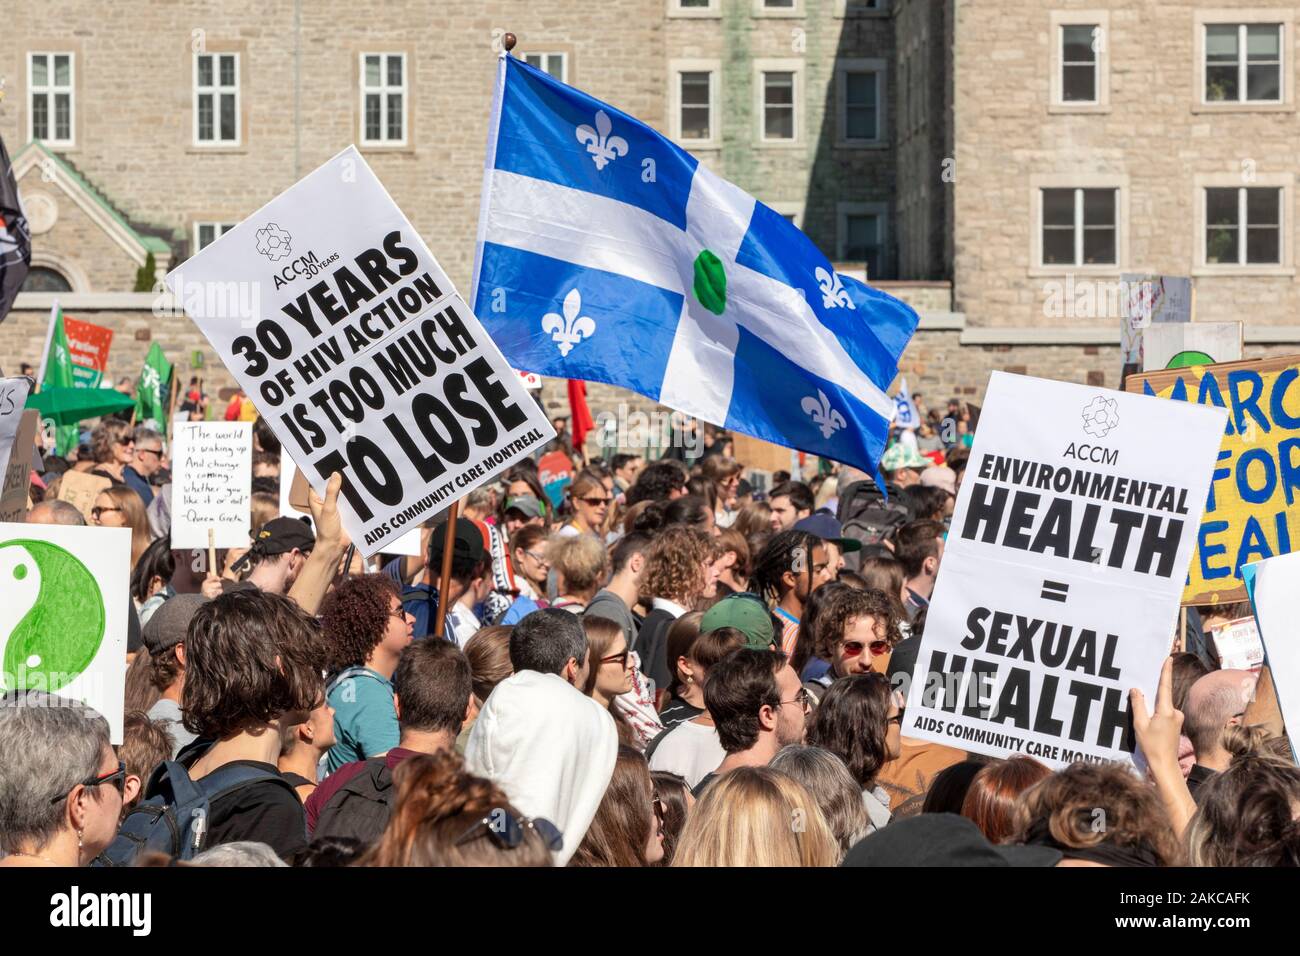 Canada, Province de Québec, Montréal, la marche pour le climat, la procession, foule agitant signe avec slogan, drapeau du Québec avec point vert Banque D'Images